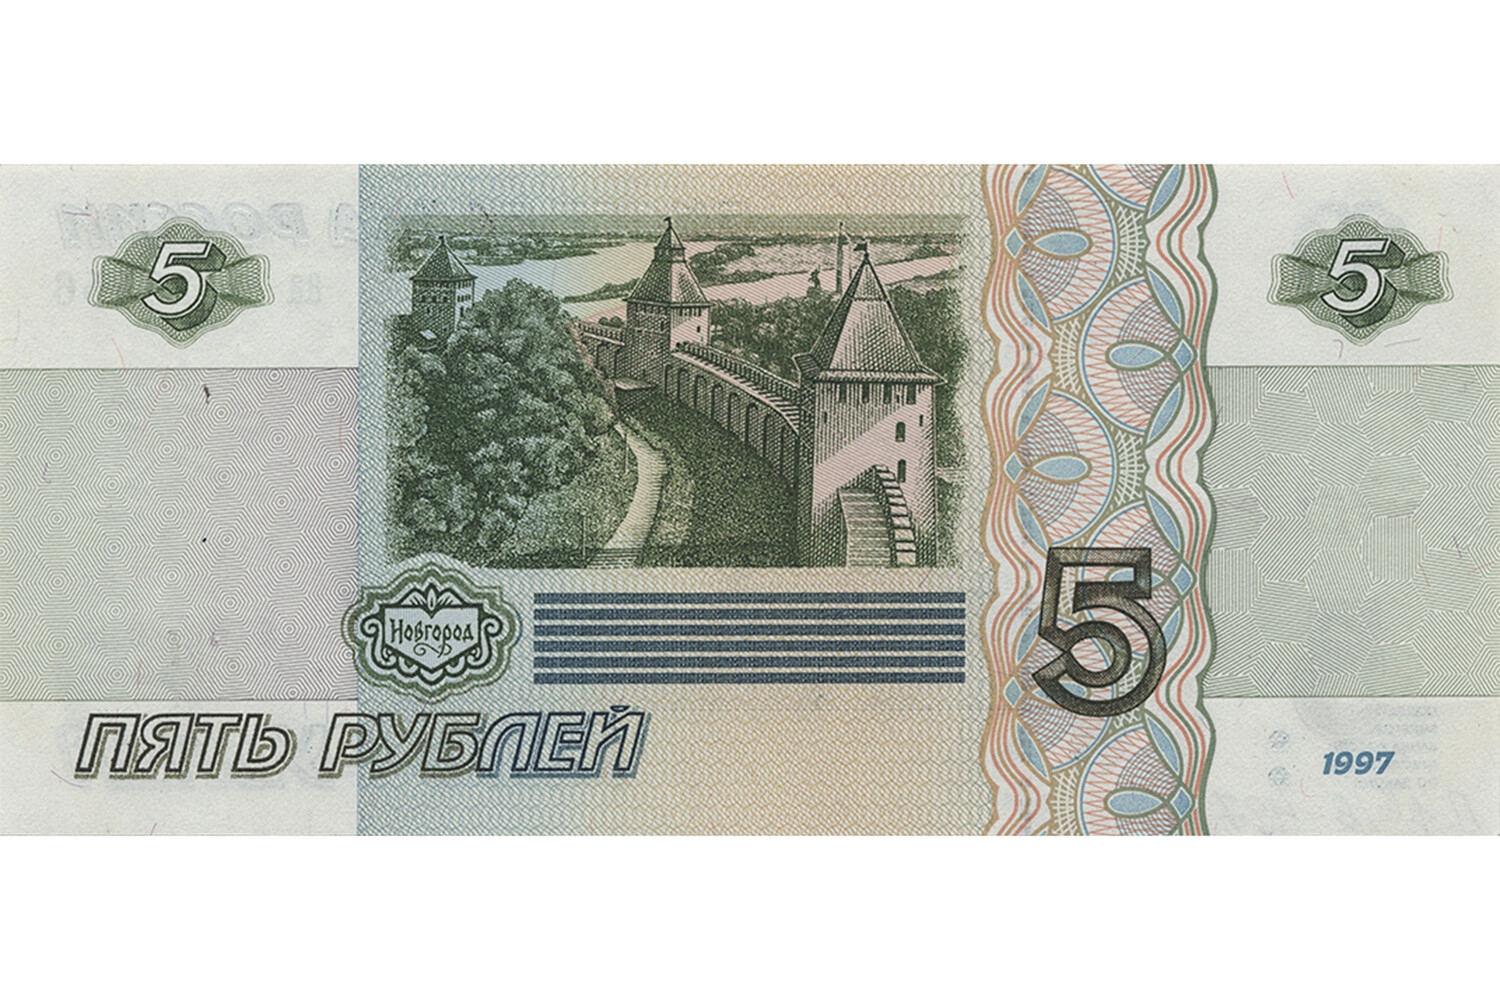 Пятирублевые банкноты могут вернуться в оборот уже в 2023 году